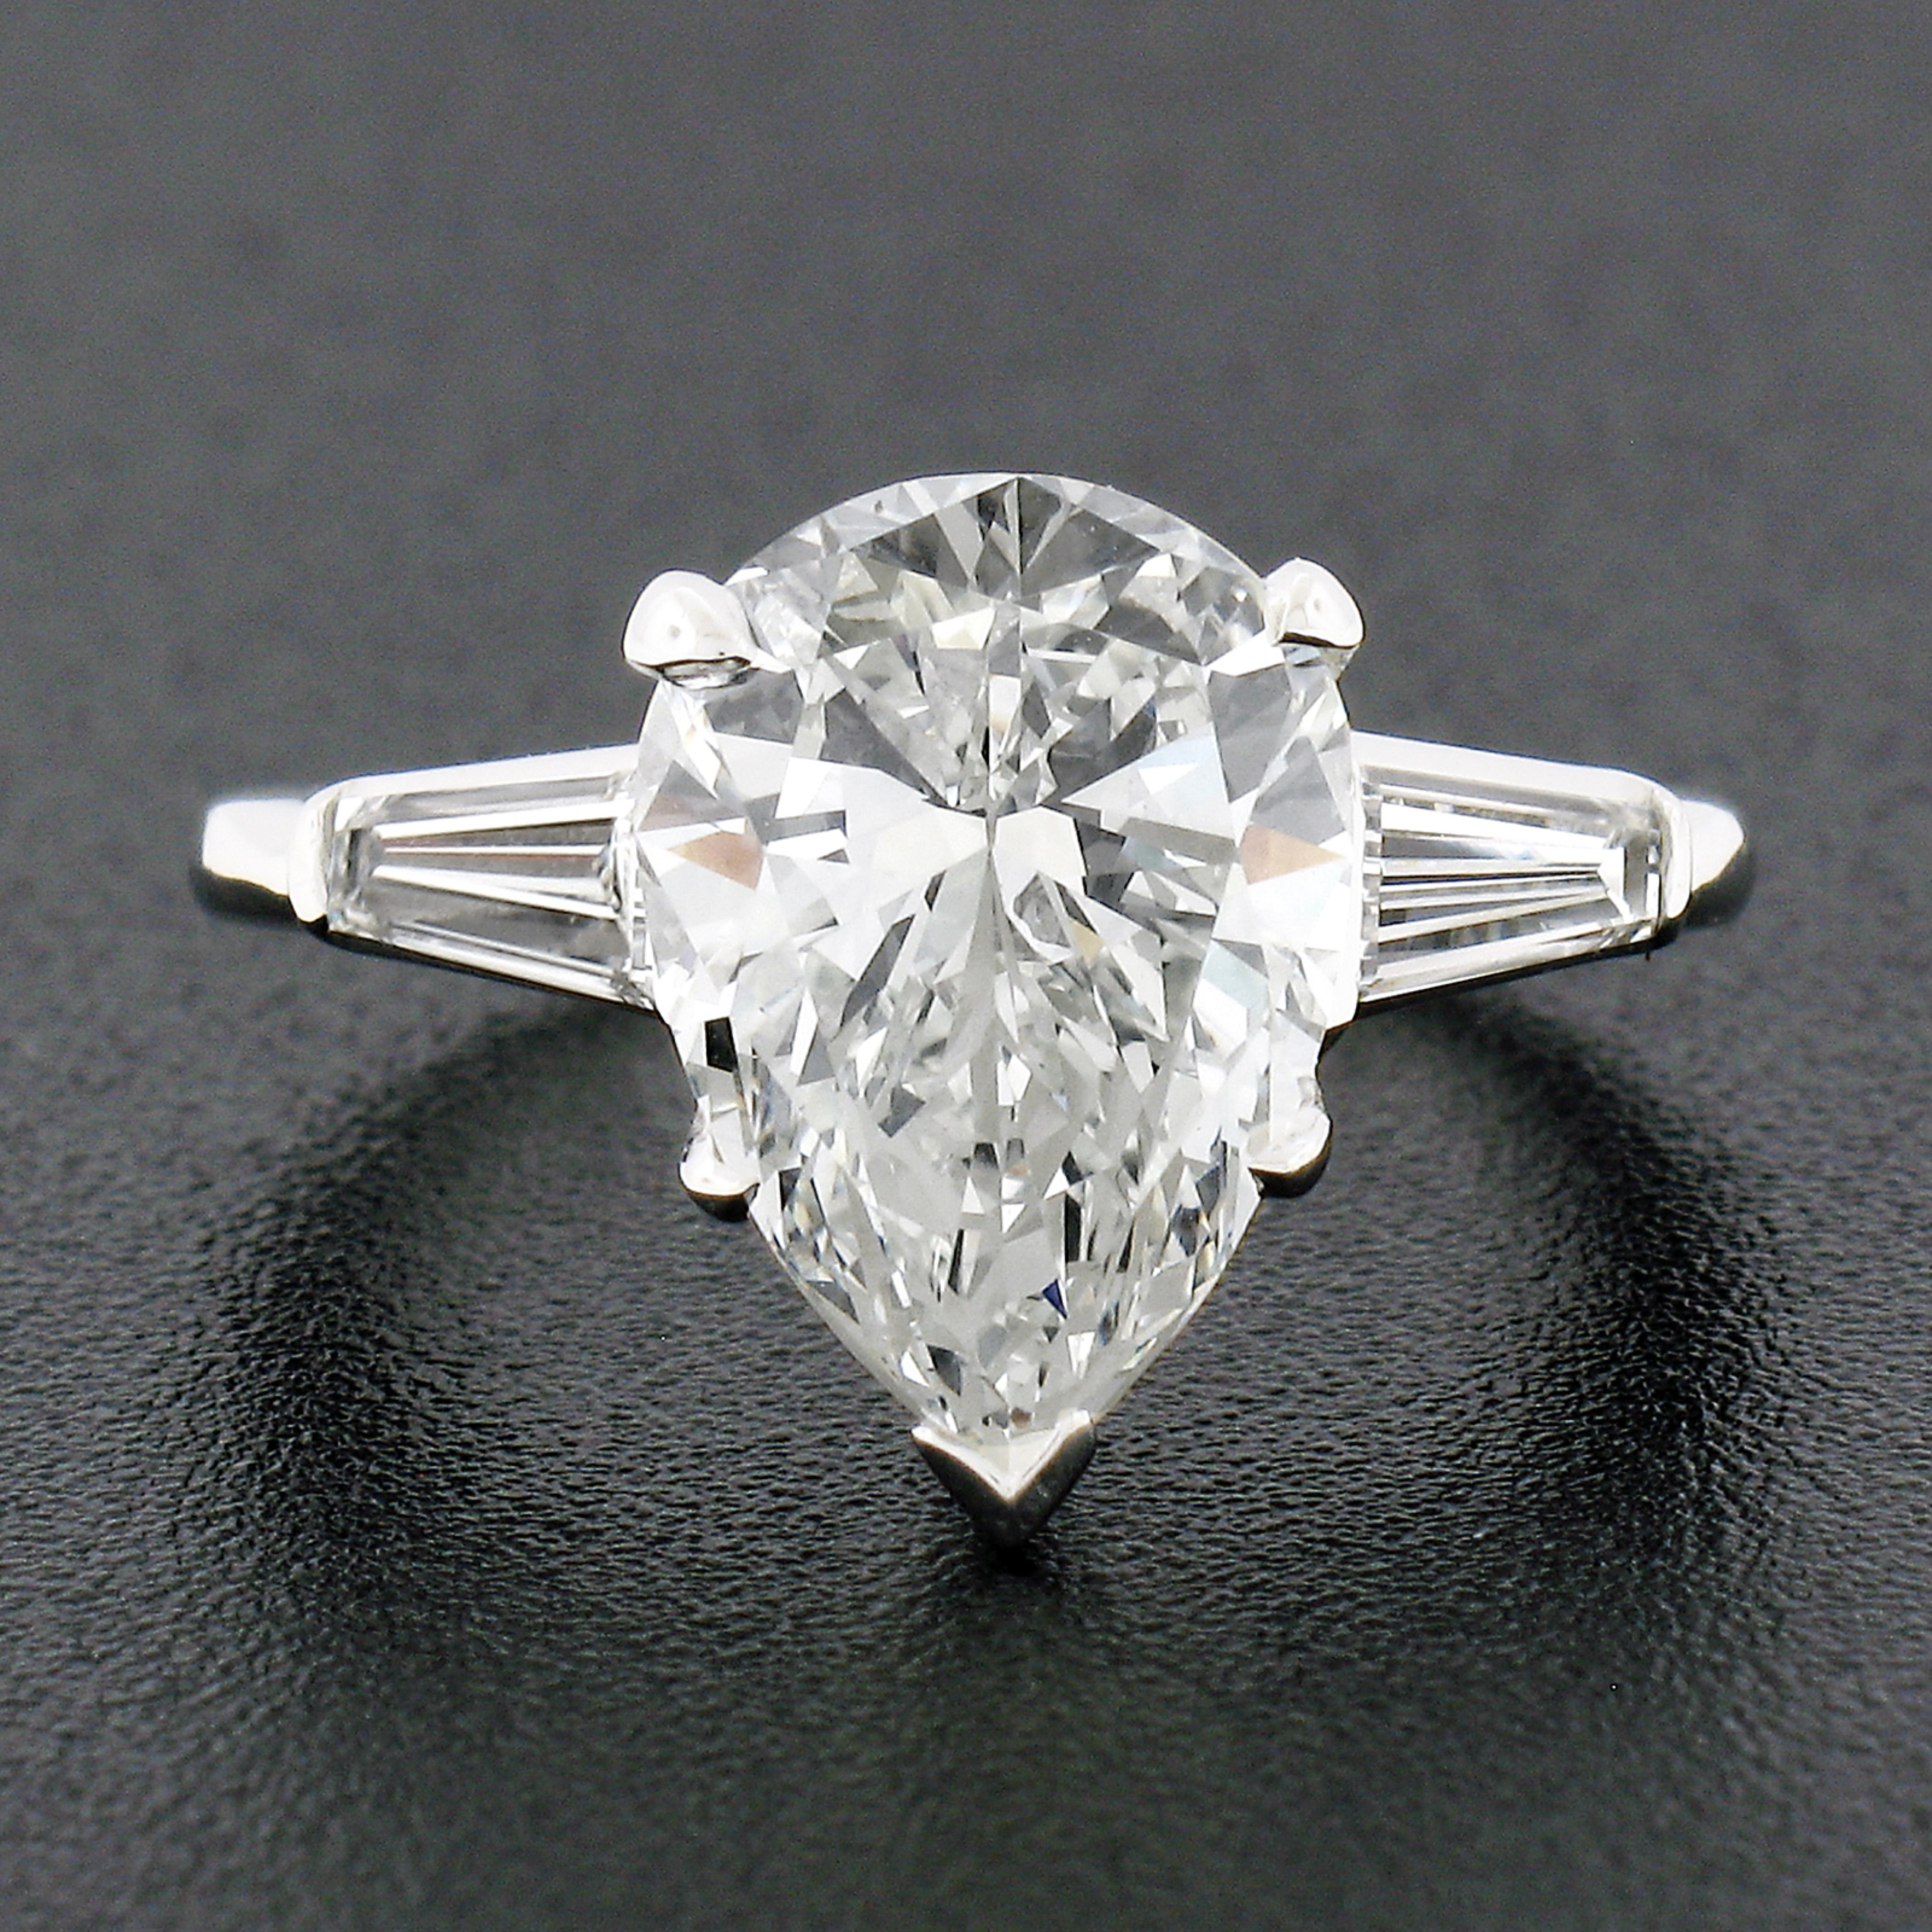 Cette spectaculaire bague de fiançailles en diamant est très bien réalisée dans une monture classique en platine massif qui porte en son centre un superbe diamant poire de taille brillant, certifié par le GIA. Ce magnifique diamant est certifié par